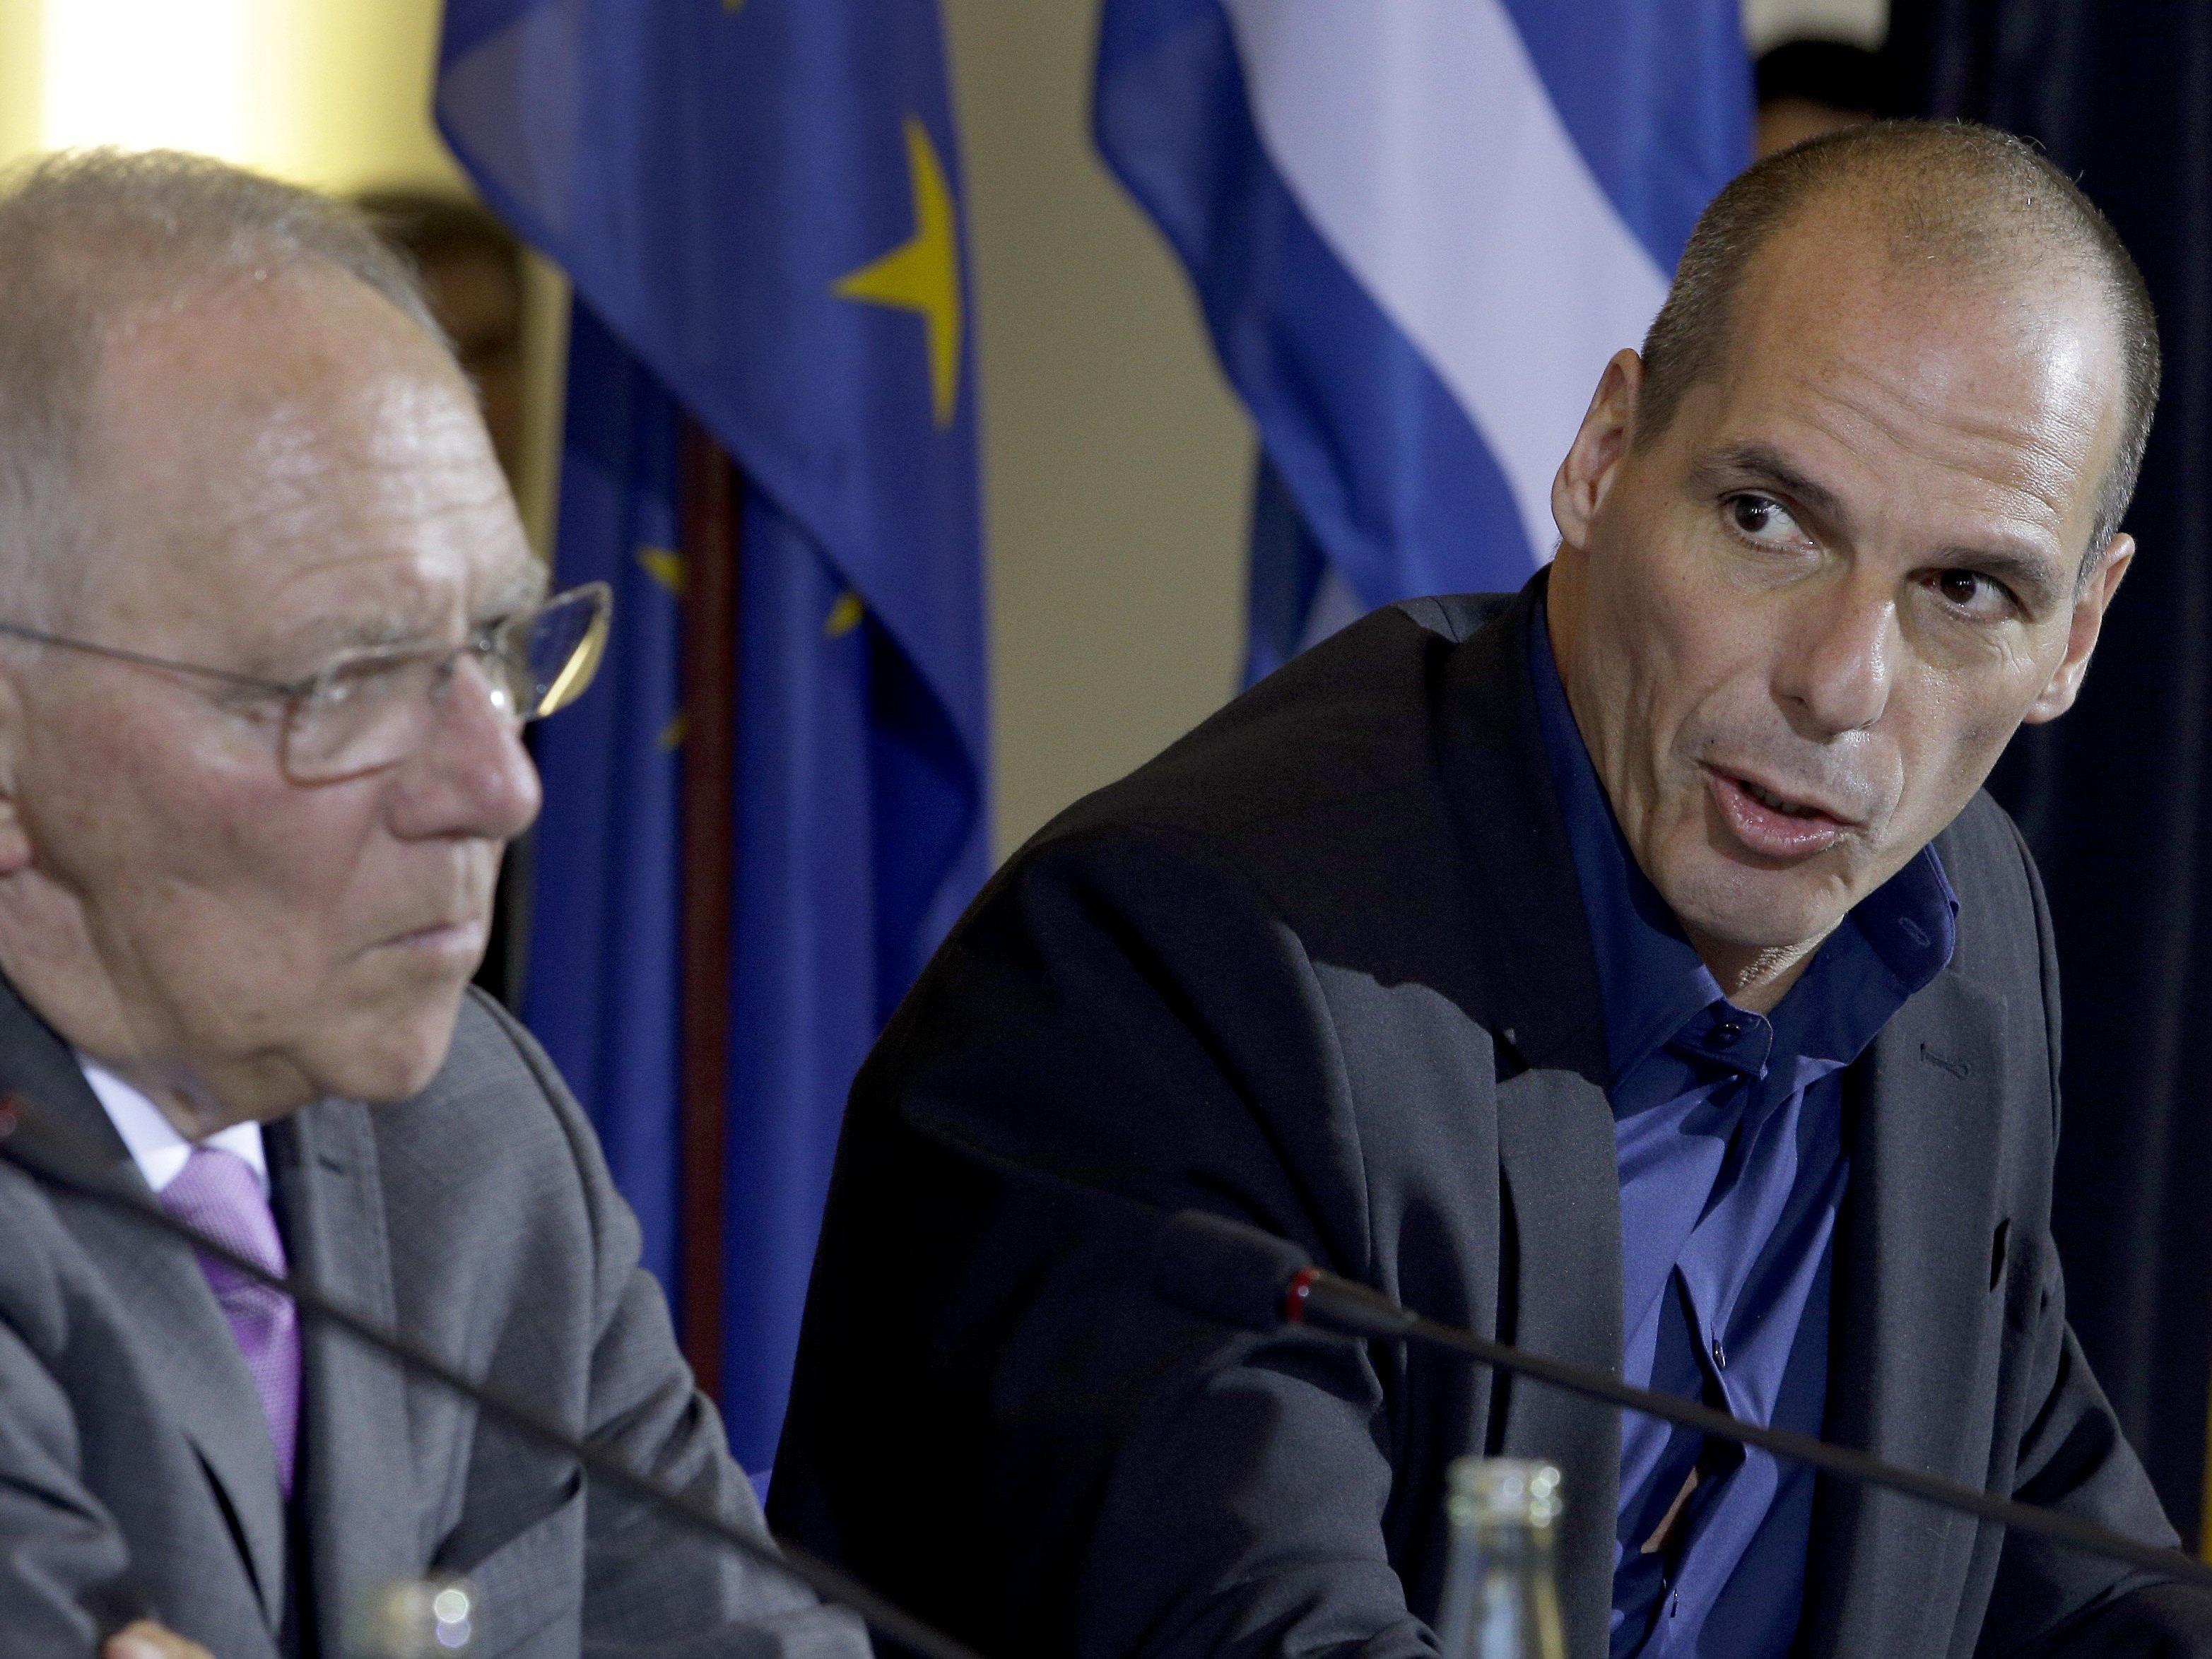 Regierung in Athen fordert von Berlin Reparationen für Zweiten Weltkrieg. Im Bild: Finanzminister Schäuble und sein griechischer Kollege Varoufakis.